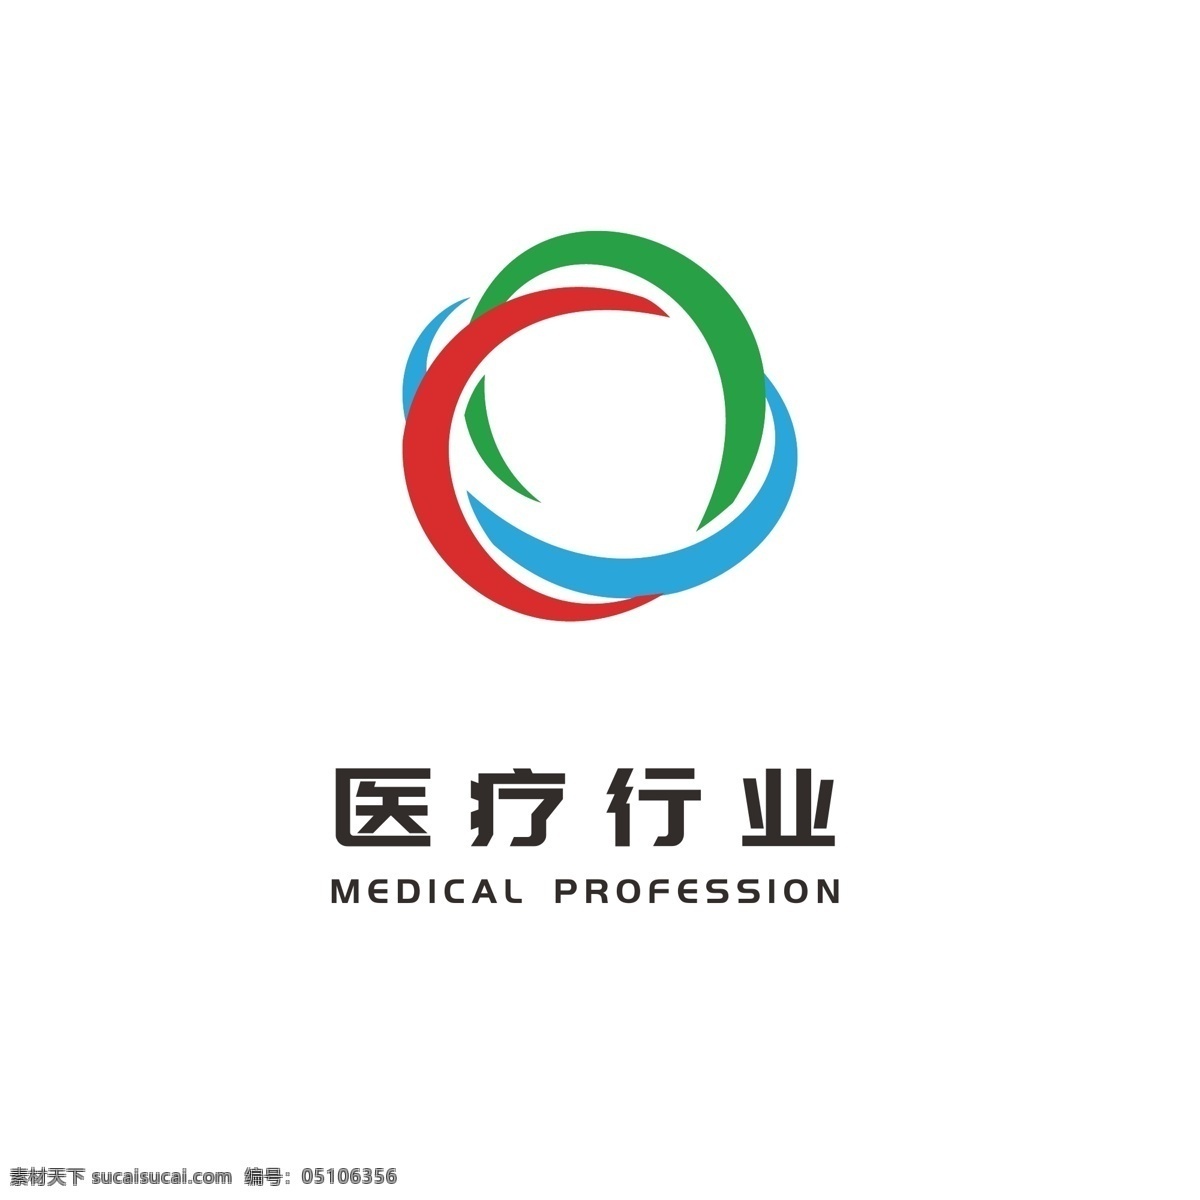 医疗 行业 卫生保健 医药 logo 大众 通用 标志 彩色logo 医疗logo 卫生logo 保健logo